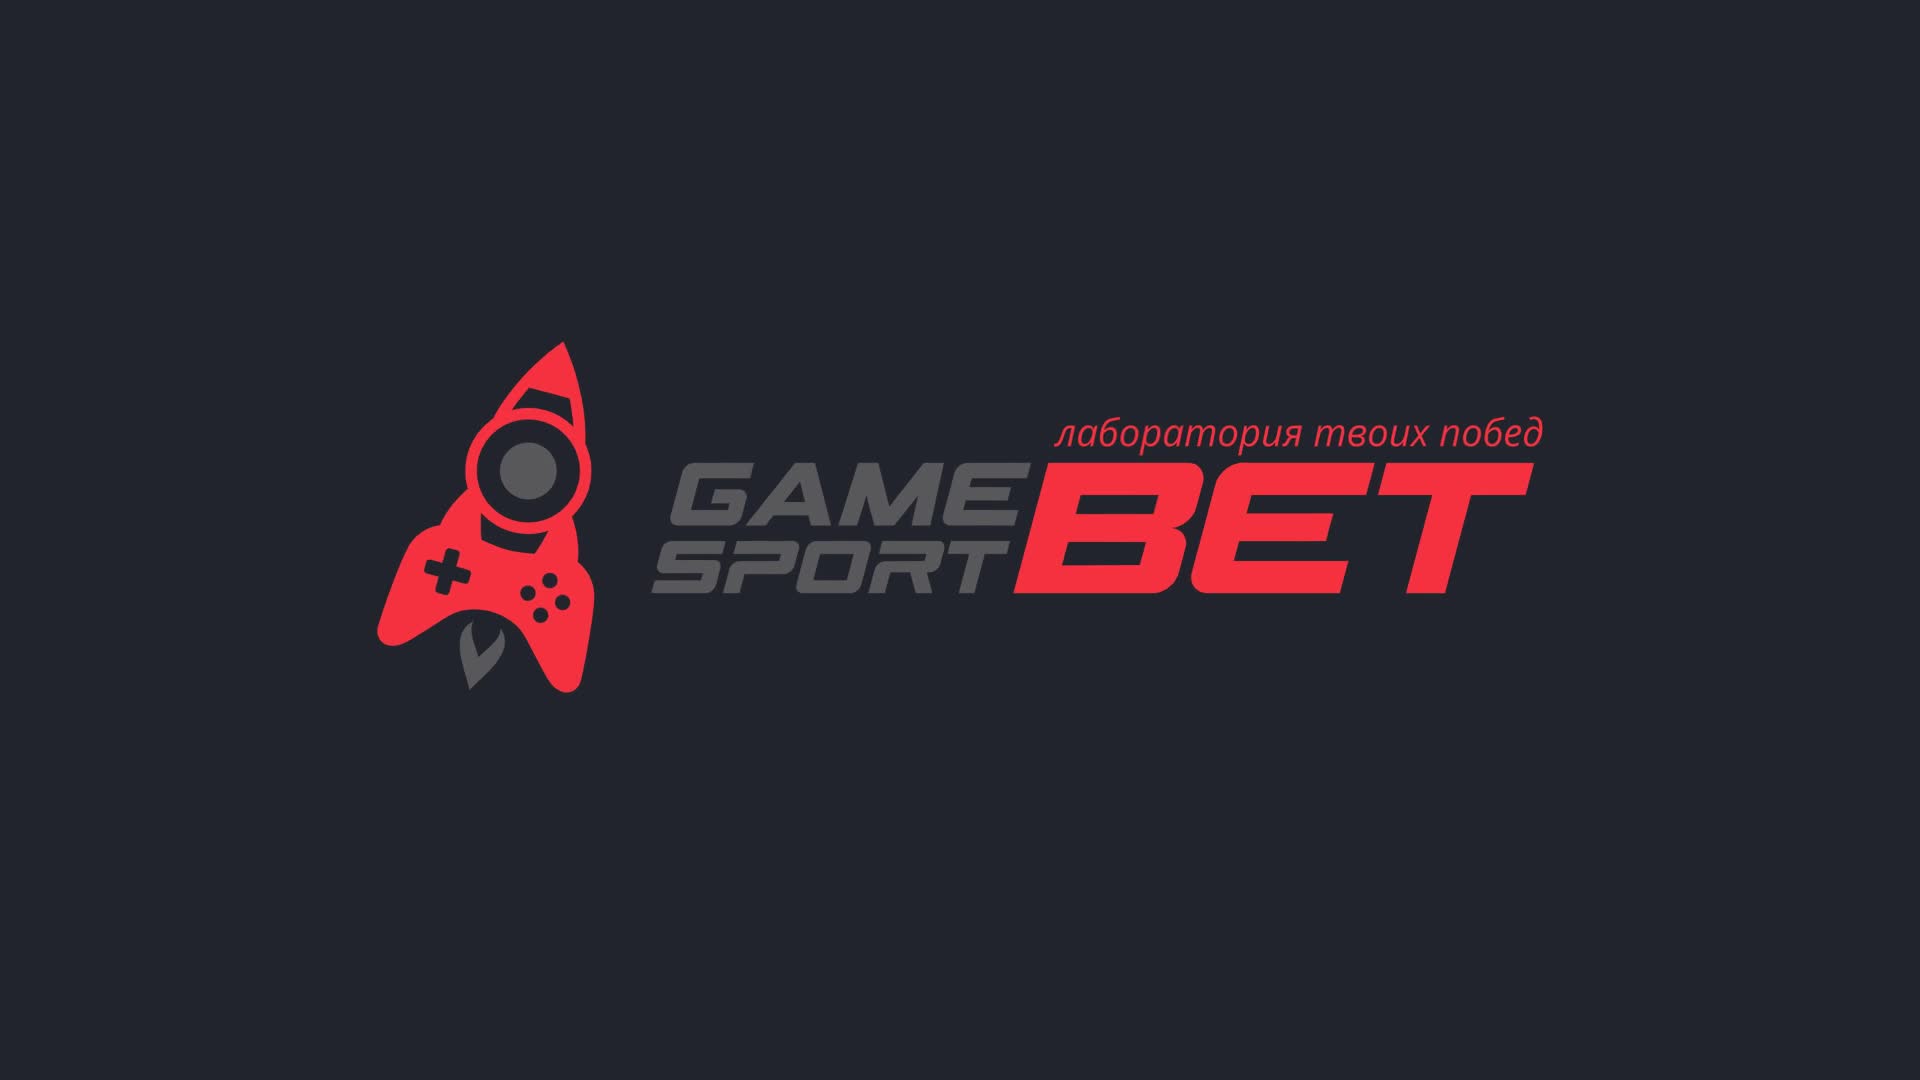 Личный кабинет геймспорт. Gamesport логотип. Game Sport ,Бэт. Горячая линия гейм спорт.